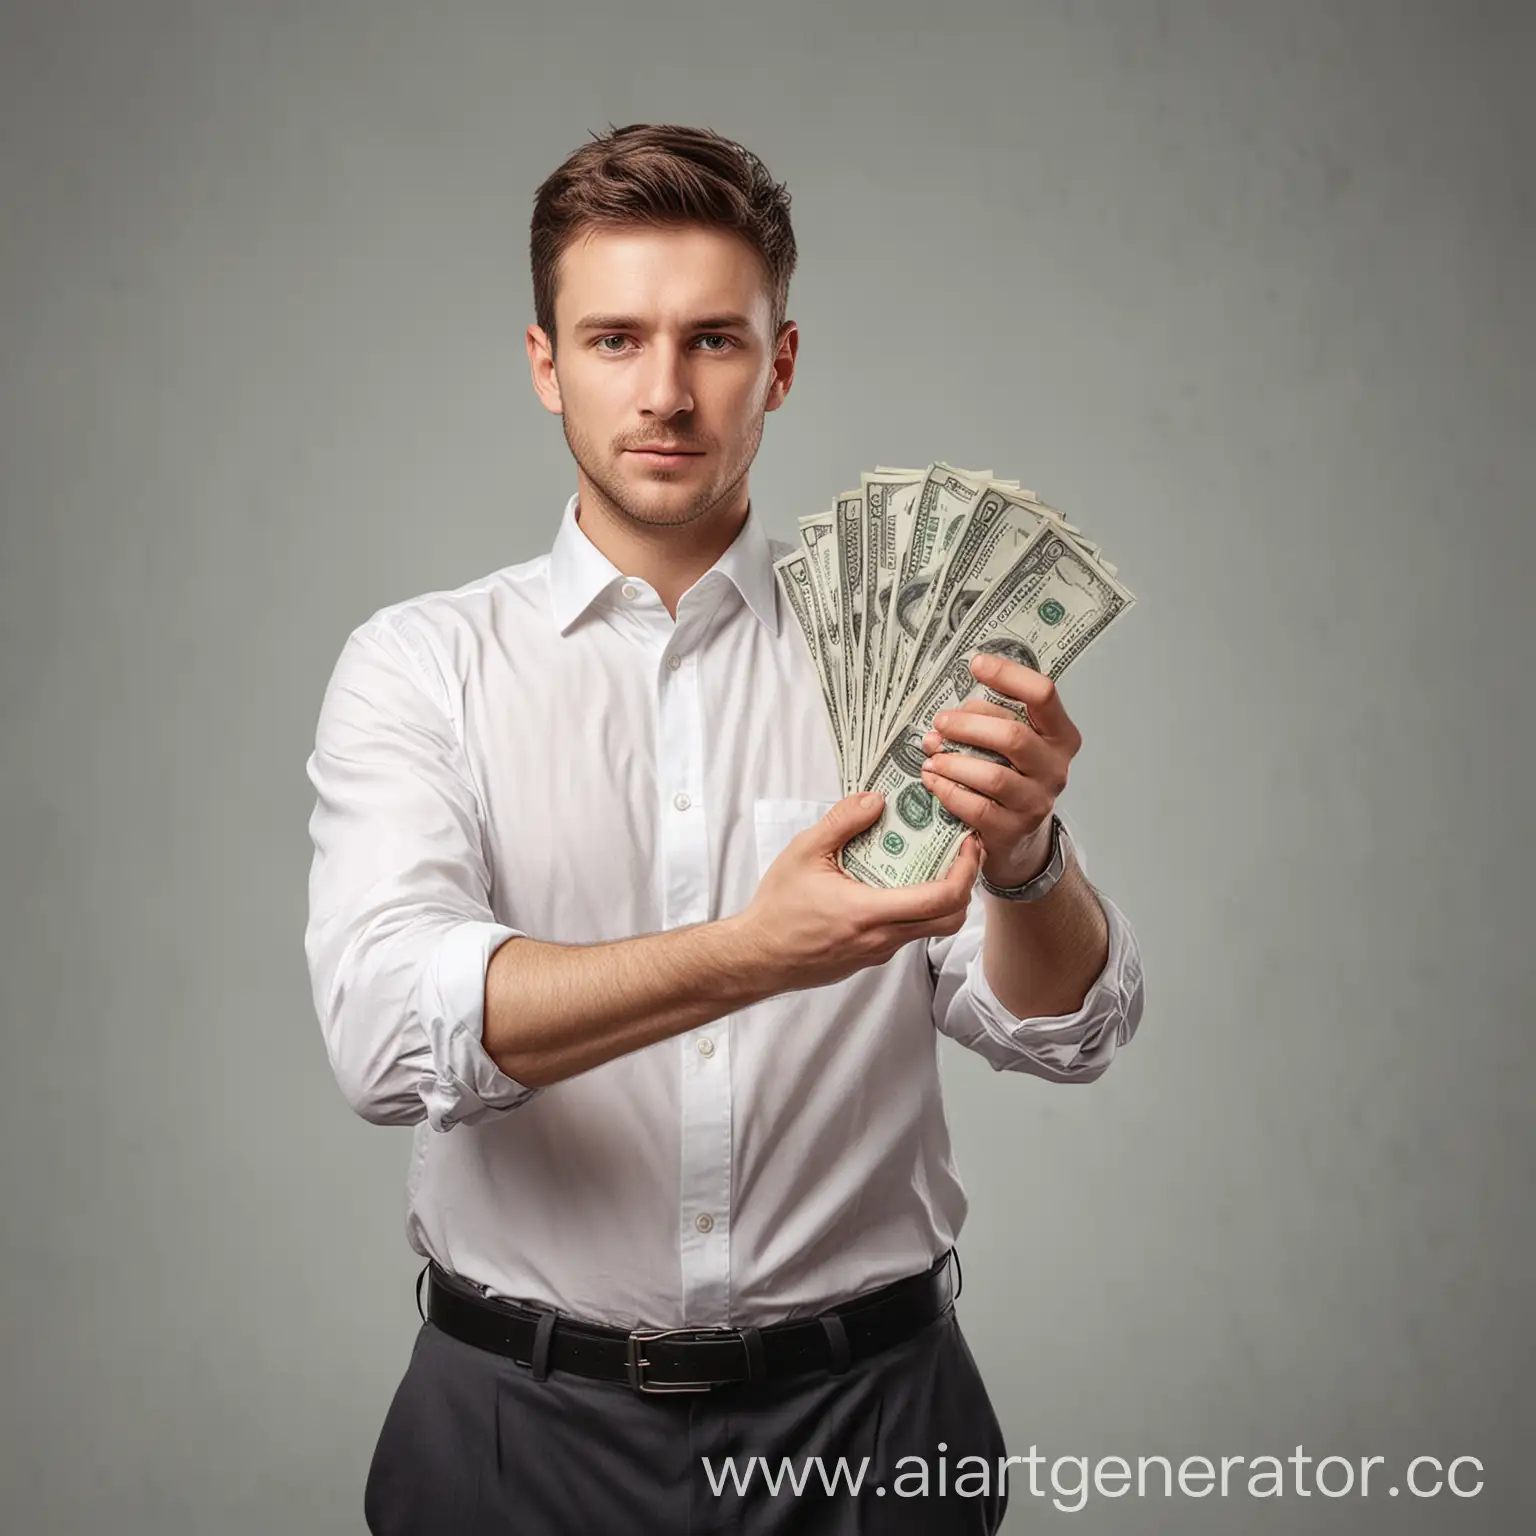 реалистичное фото, белый мужчина в белой рубашке протягивает руки с пачкой денег на руках, предлагая забрать их, повернут под 45 градусов направо